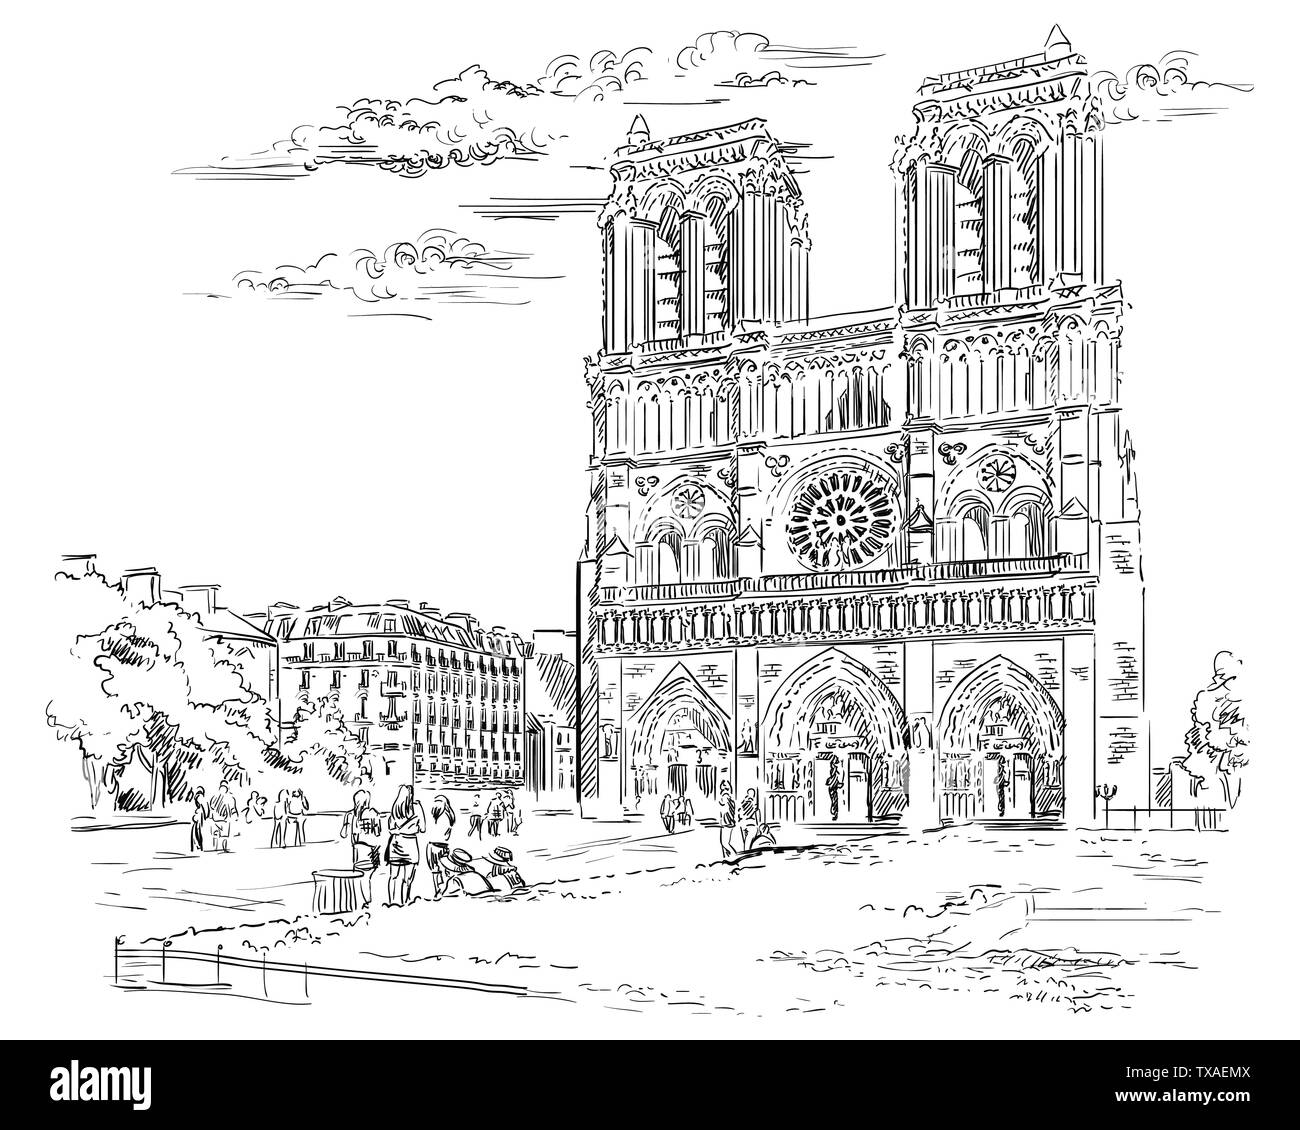 Vektor hand Zeichnung Abbildung der Kathedrale Notre Dame (Paris, Frankreich). Wahrzeichen von Paris. Stadtbild mit der Notre Dame Kathedrale. Vektor hand Zeichnung Stock Vektor